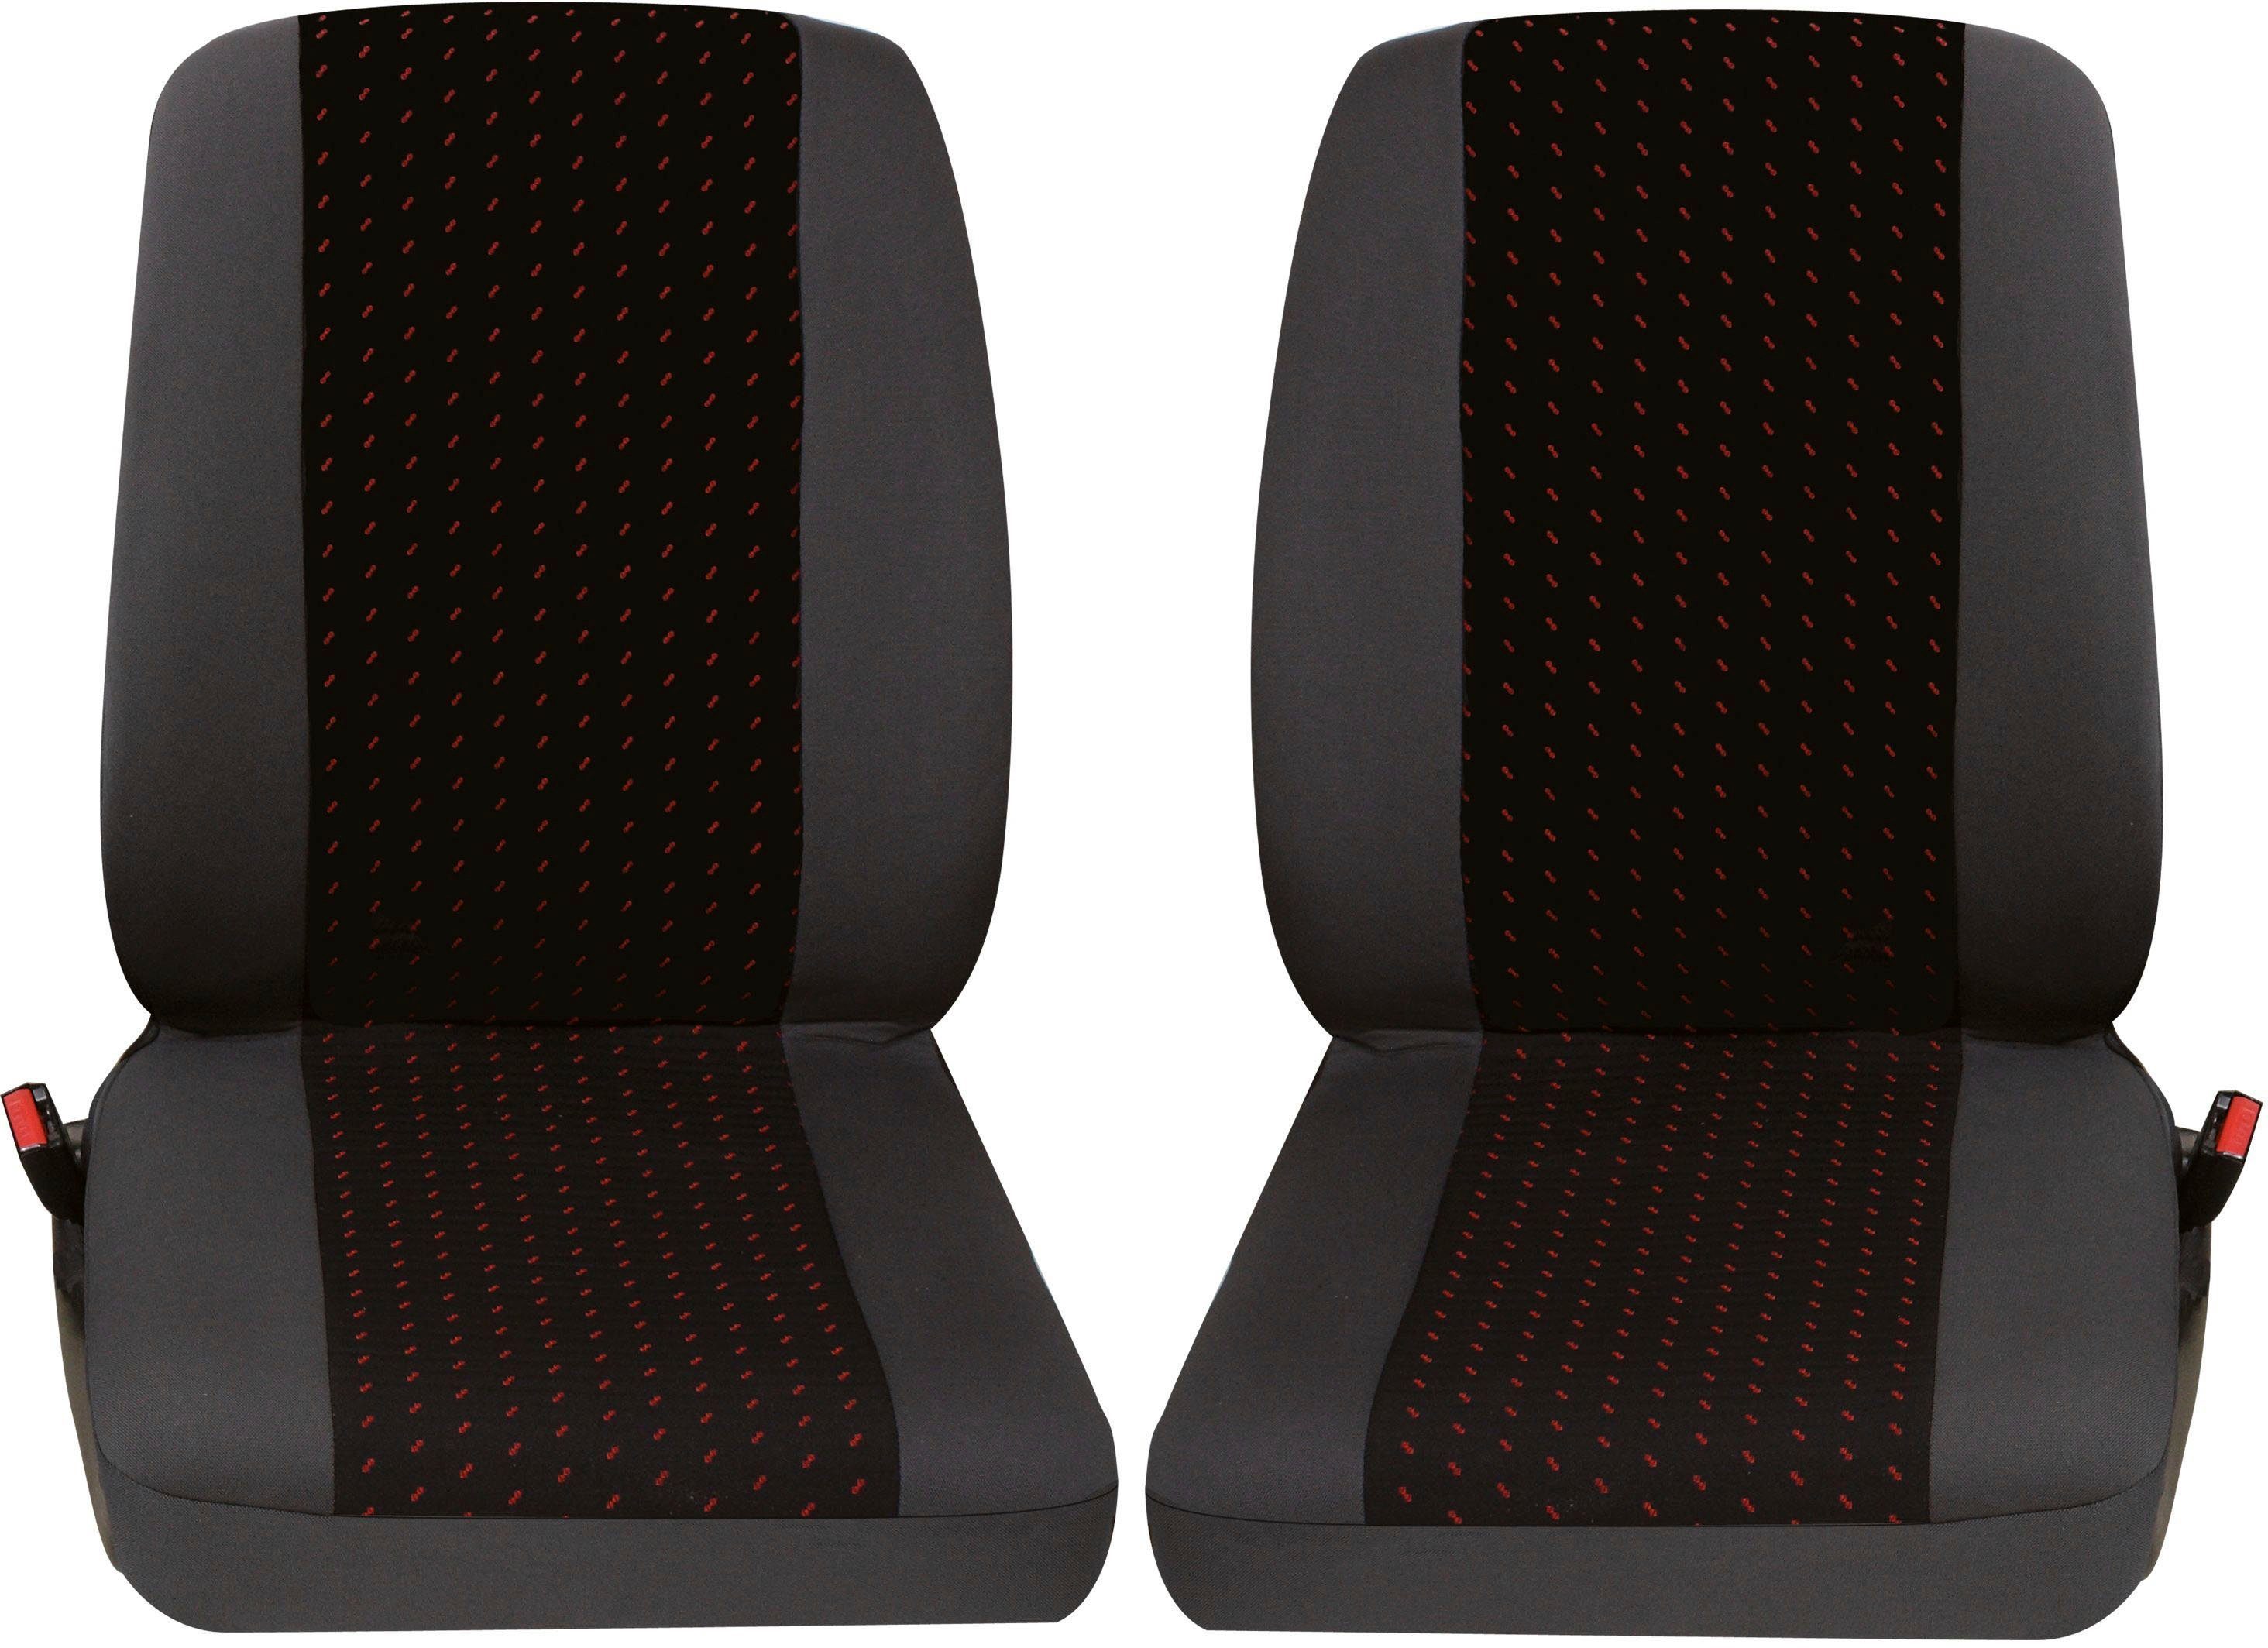 2 Stück Universal Echt Leder Auto Sitzbezüge schwarz für fast alle PKW,  Fahrersitz und Beifahrersitz, Leder